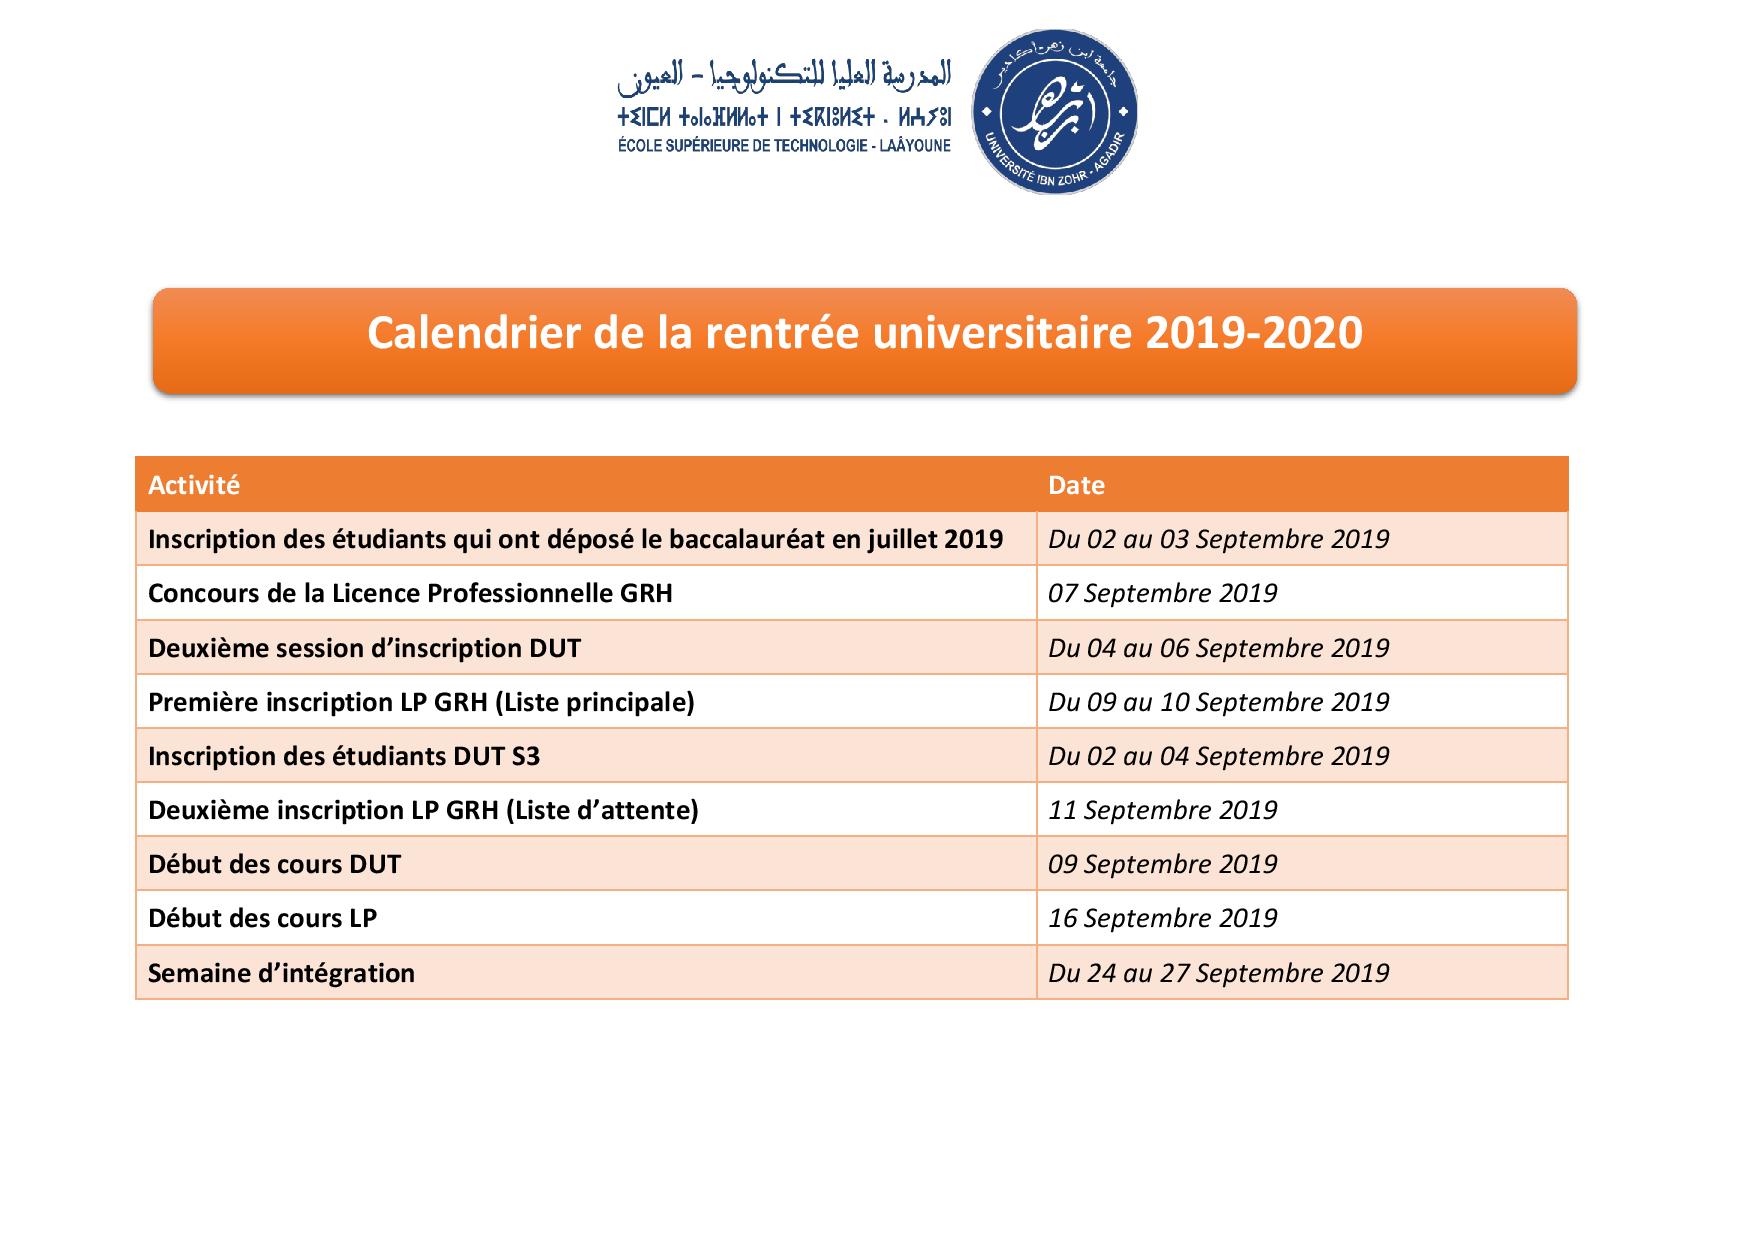 Calendrier de la rentrée universitaire 2019-2020